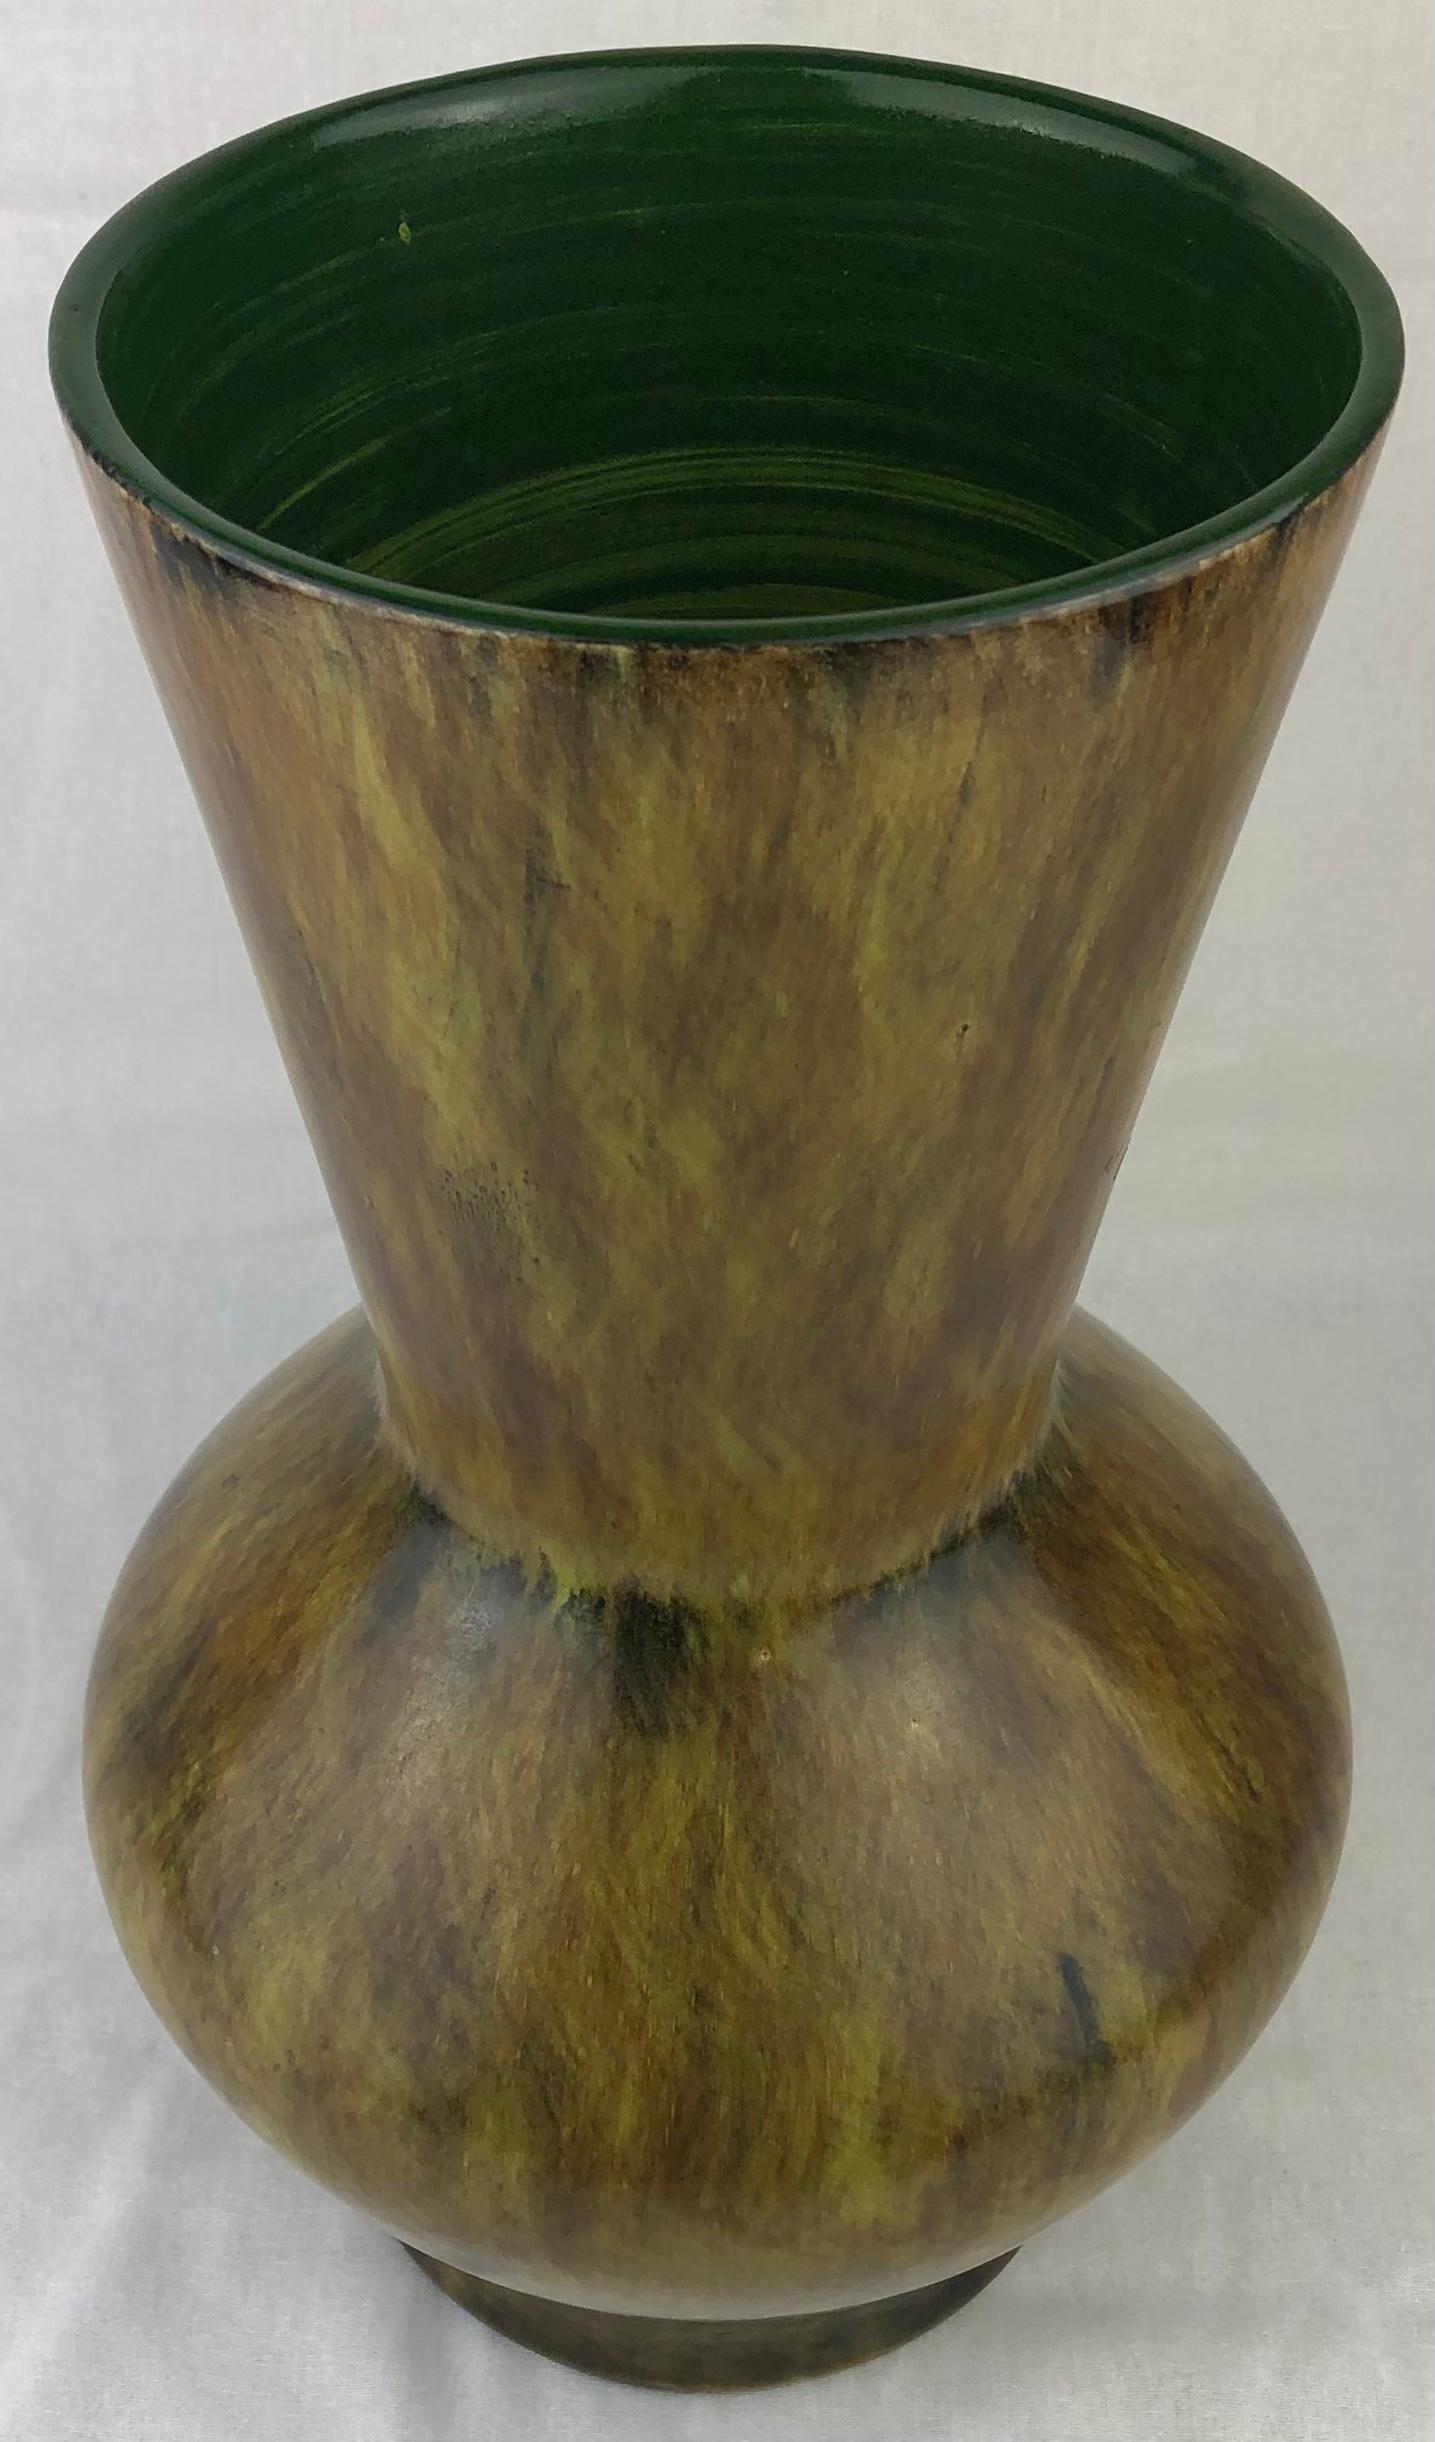 Vase coloré en céramique français du milieu du 20e siècle, estampillé Saint Clément France. Un magnifique objet décoratif avec un superbe fond noir et des nuances vertes. Il semble presque en mouvement, comme les herbes marines, ce qui le rend très